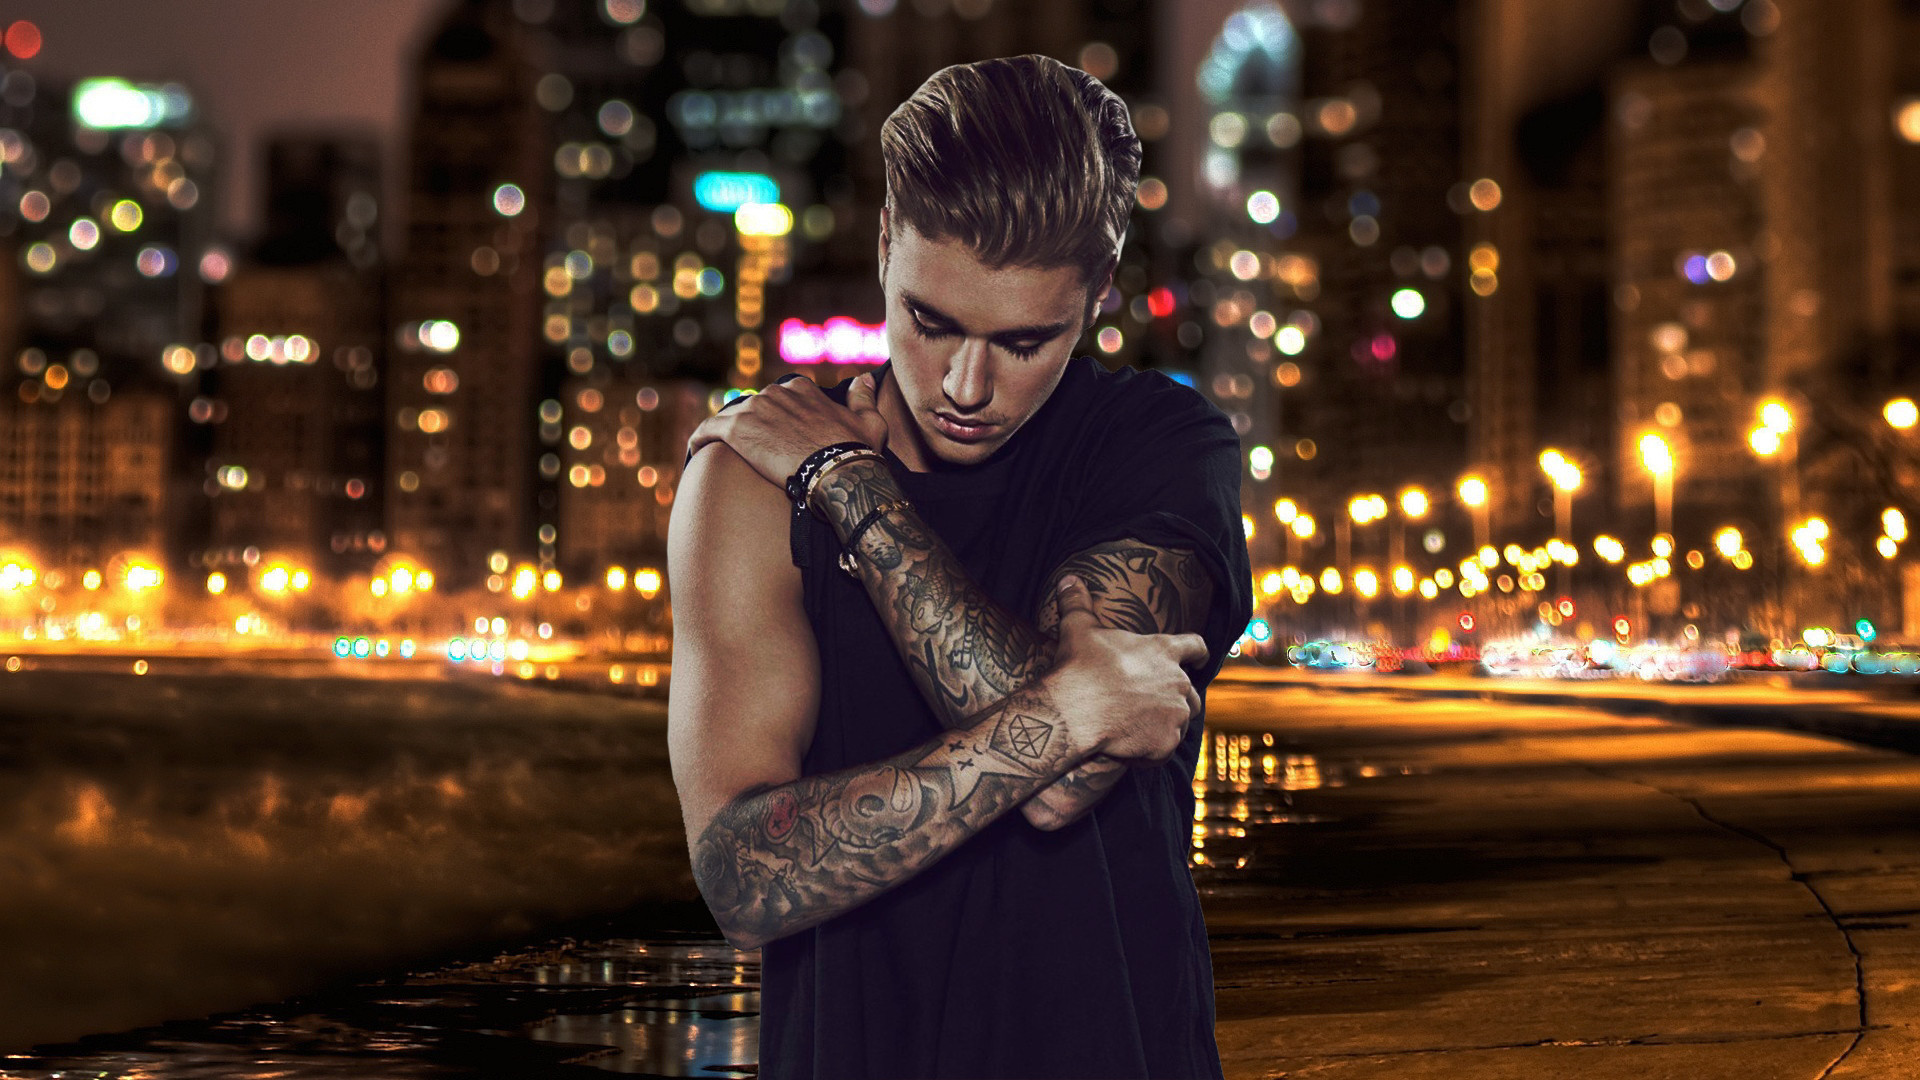 Justin Bieber Wallpaper Hd By Maarcopngs Justin Bieber - Justin Bieber Pic Hd 2019 - HD Wallpaper 